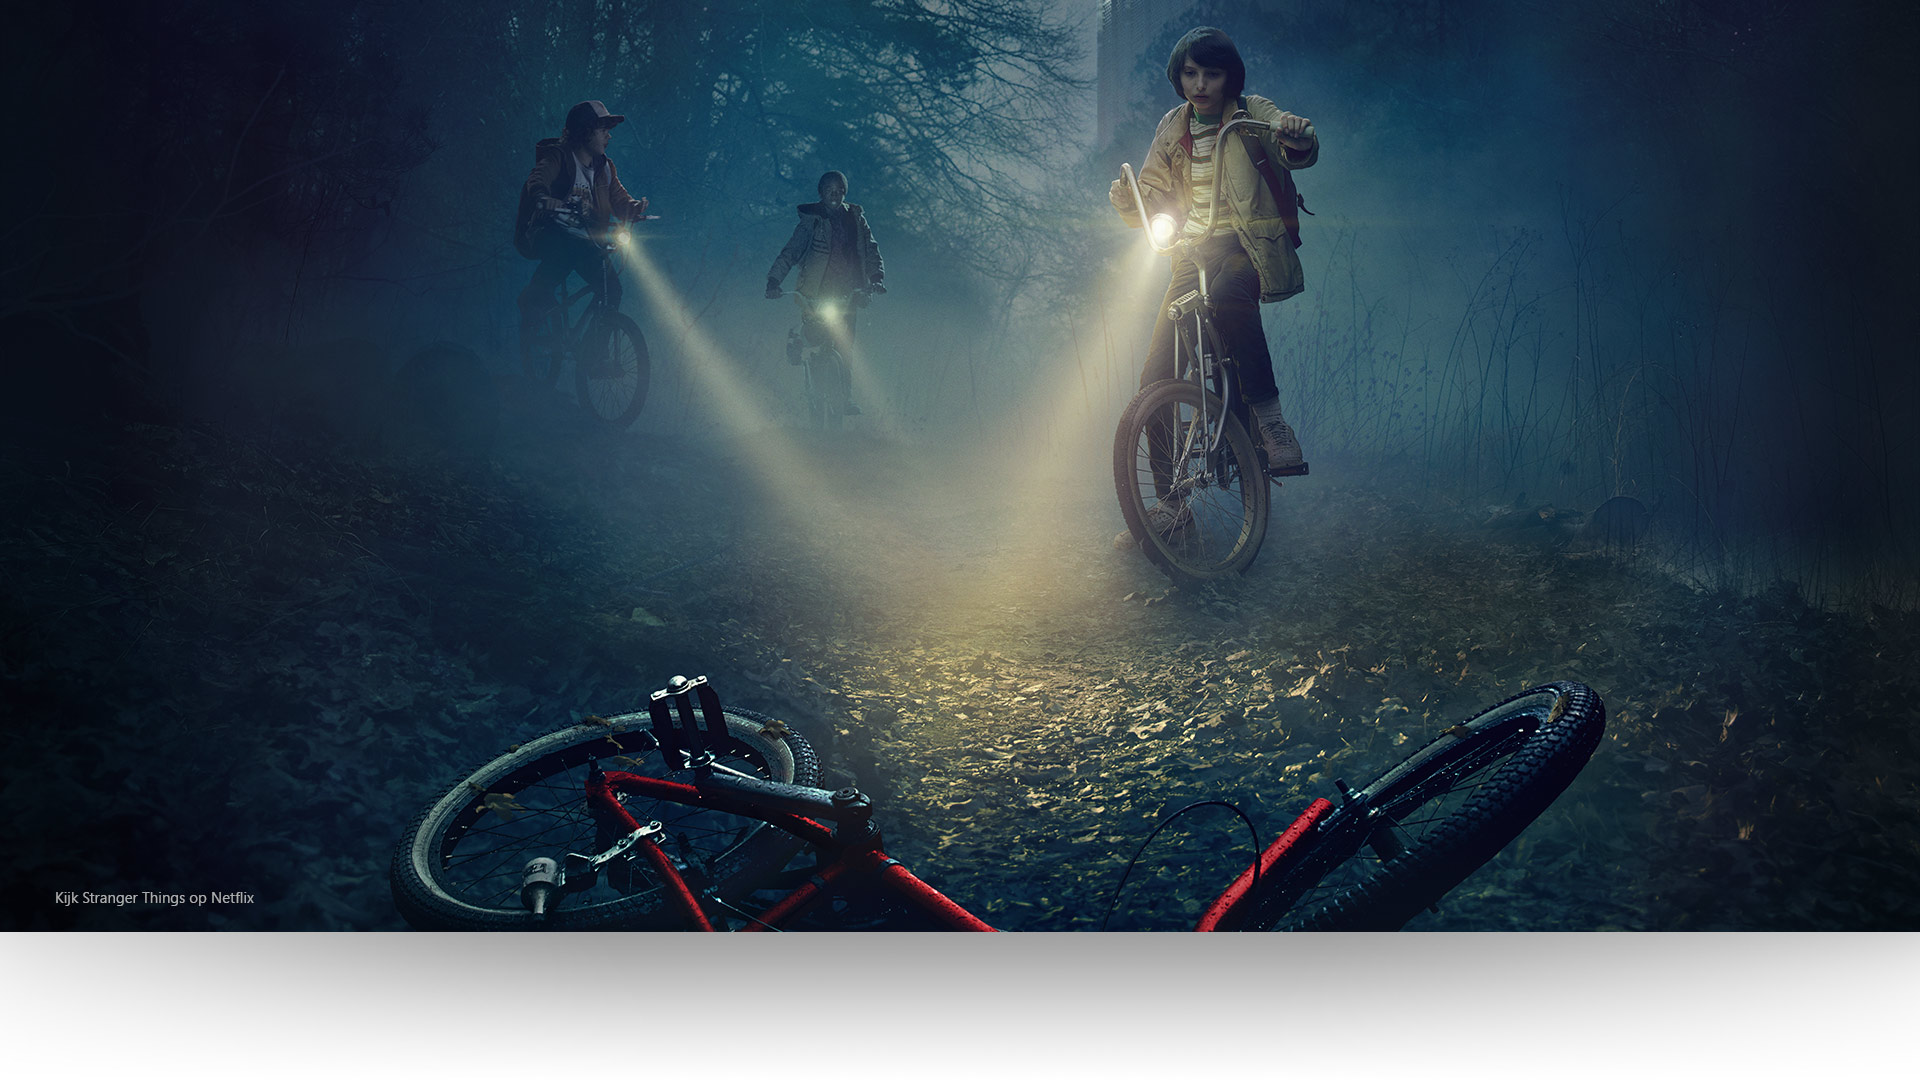 Stranger Things - Dustin, Lucas en Mike laten hun lichten schijnen op een verlaten fiets op een somber bospad.